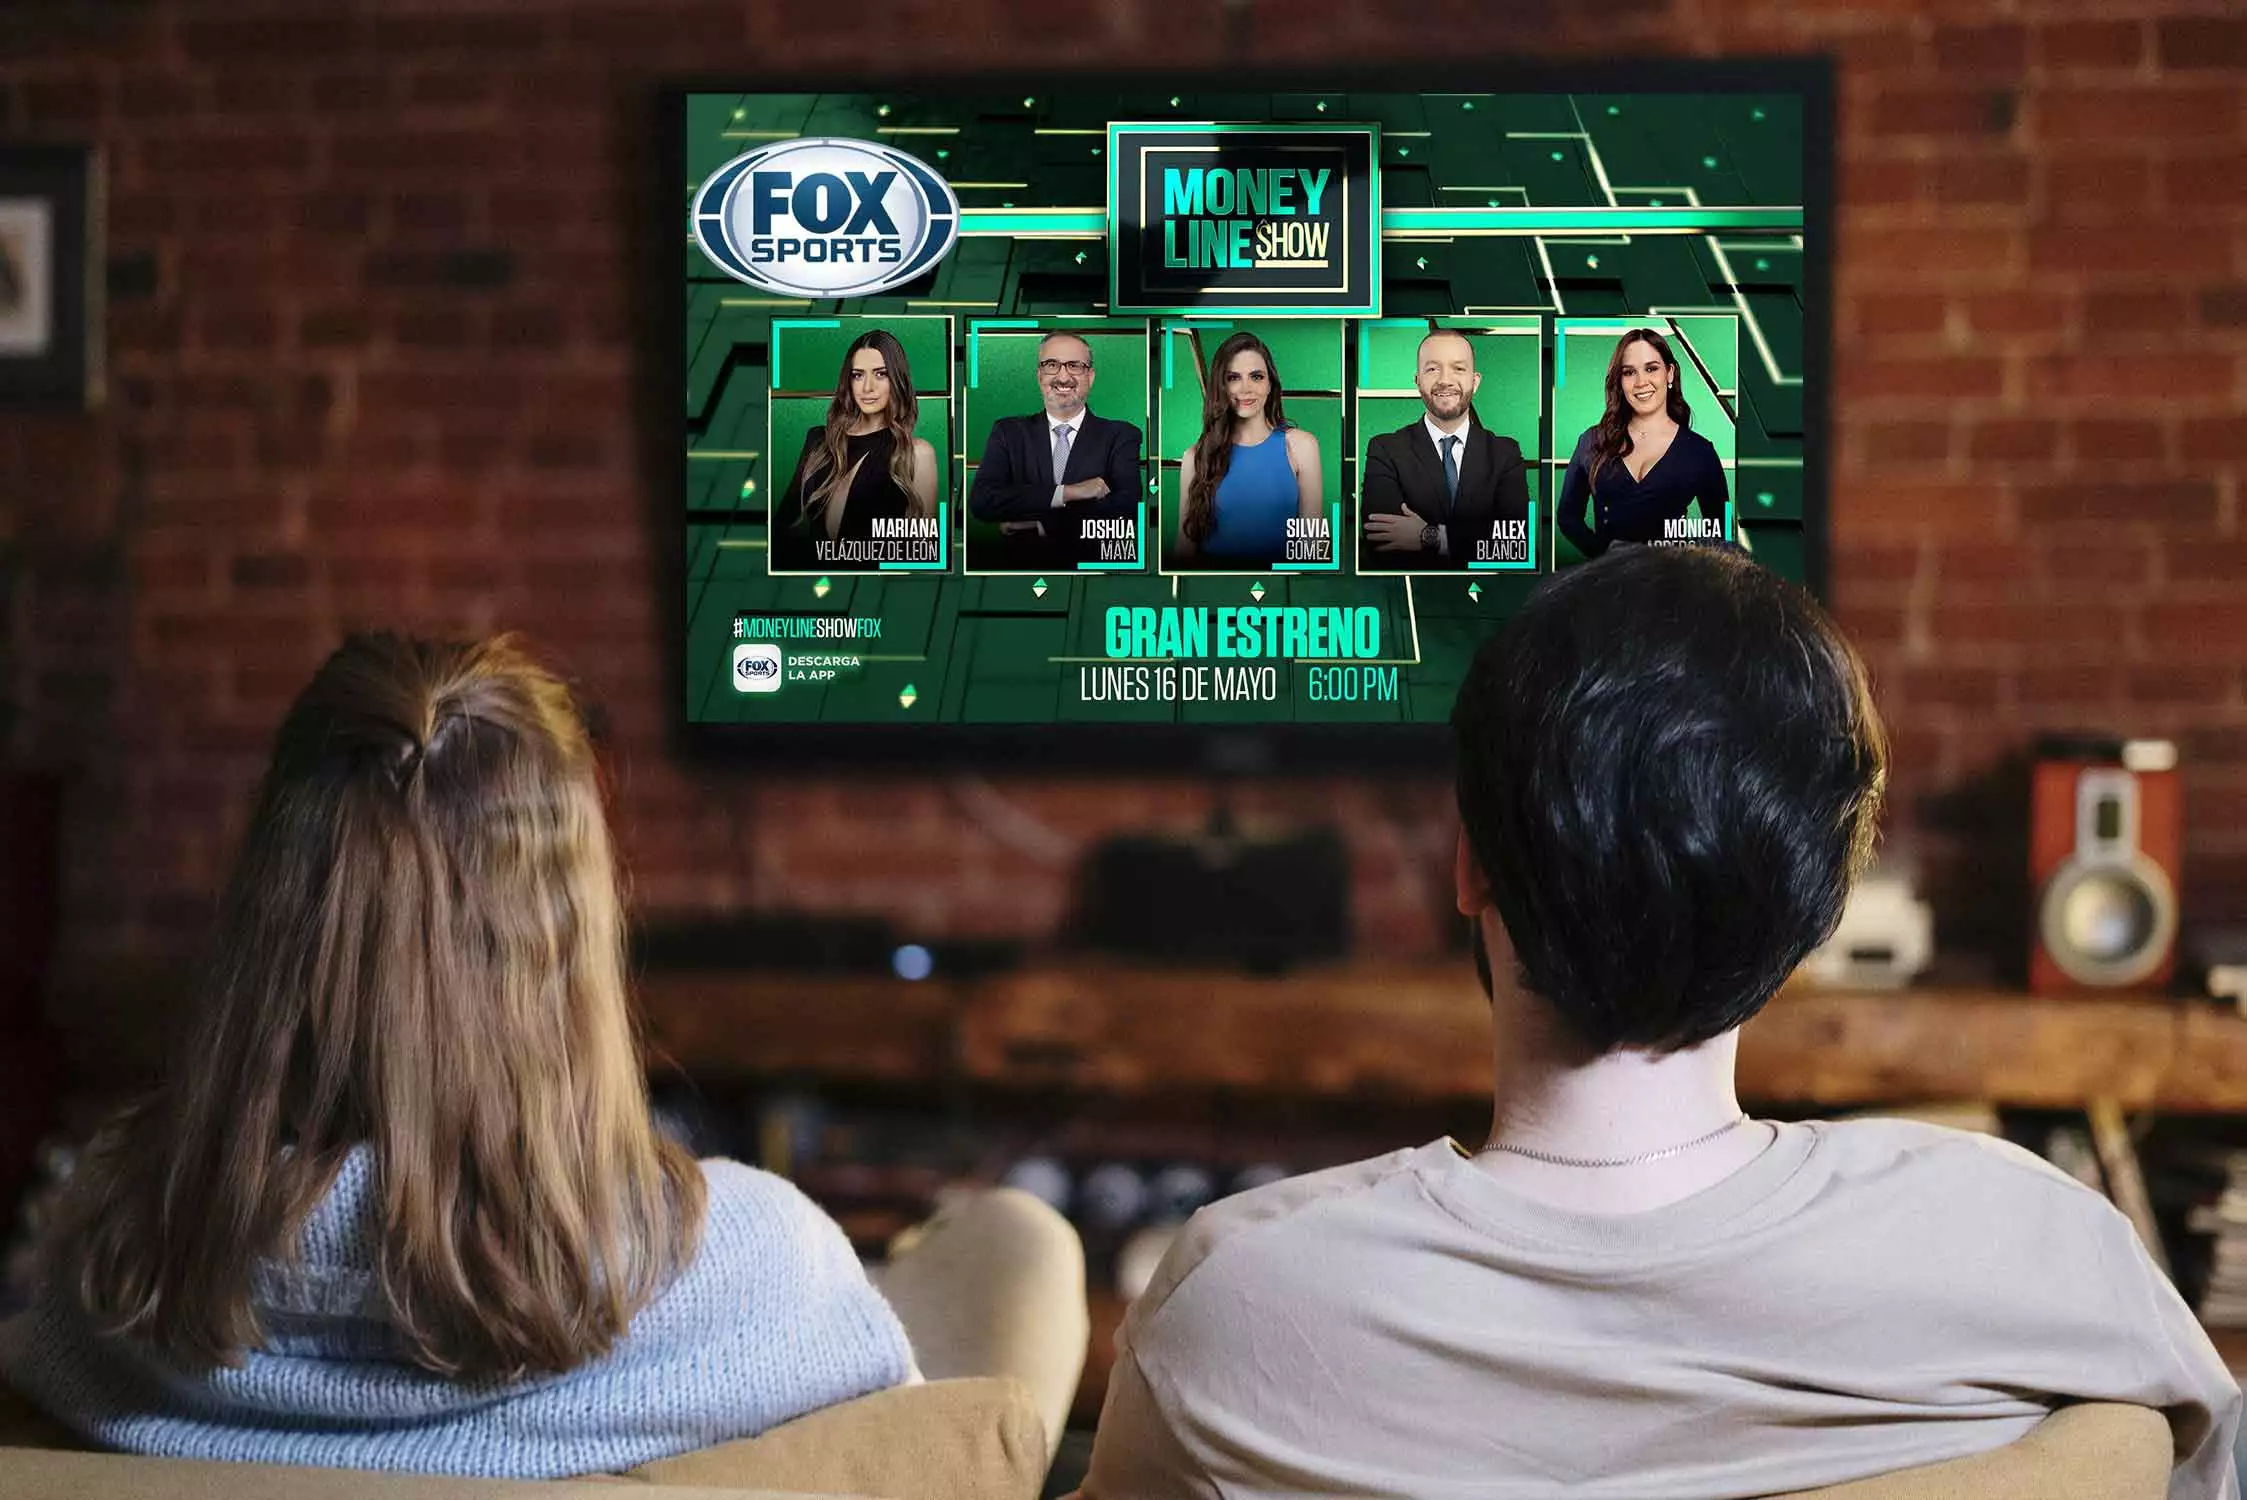 Money Line Show: El Programa De Apuestas De Fox Sports México